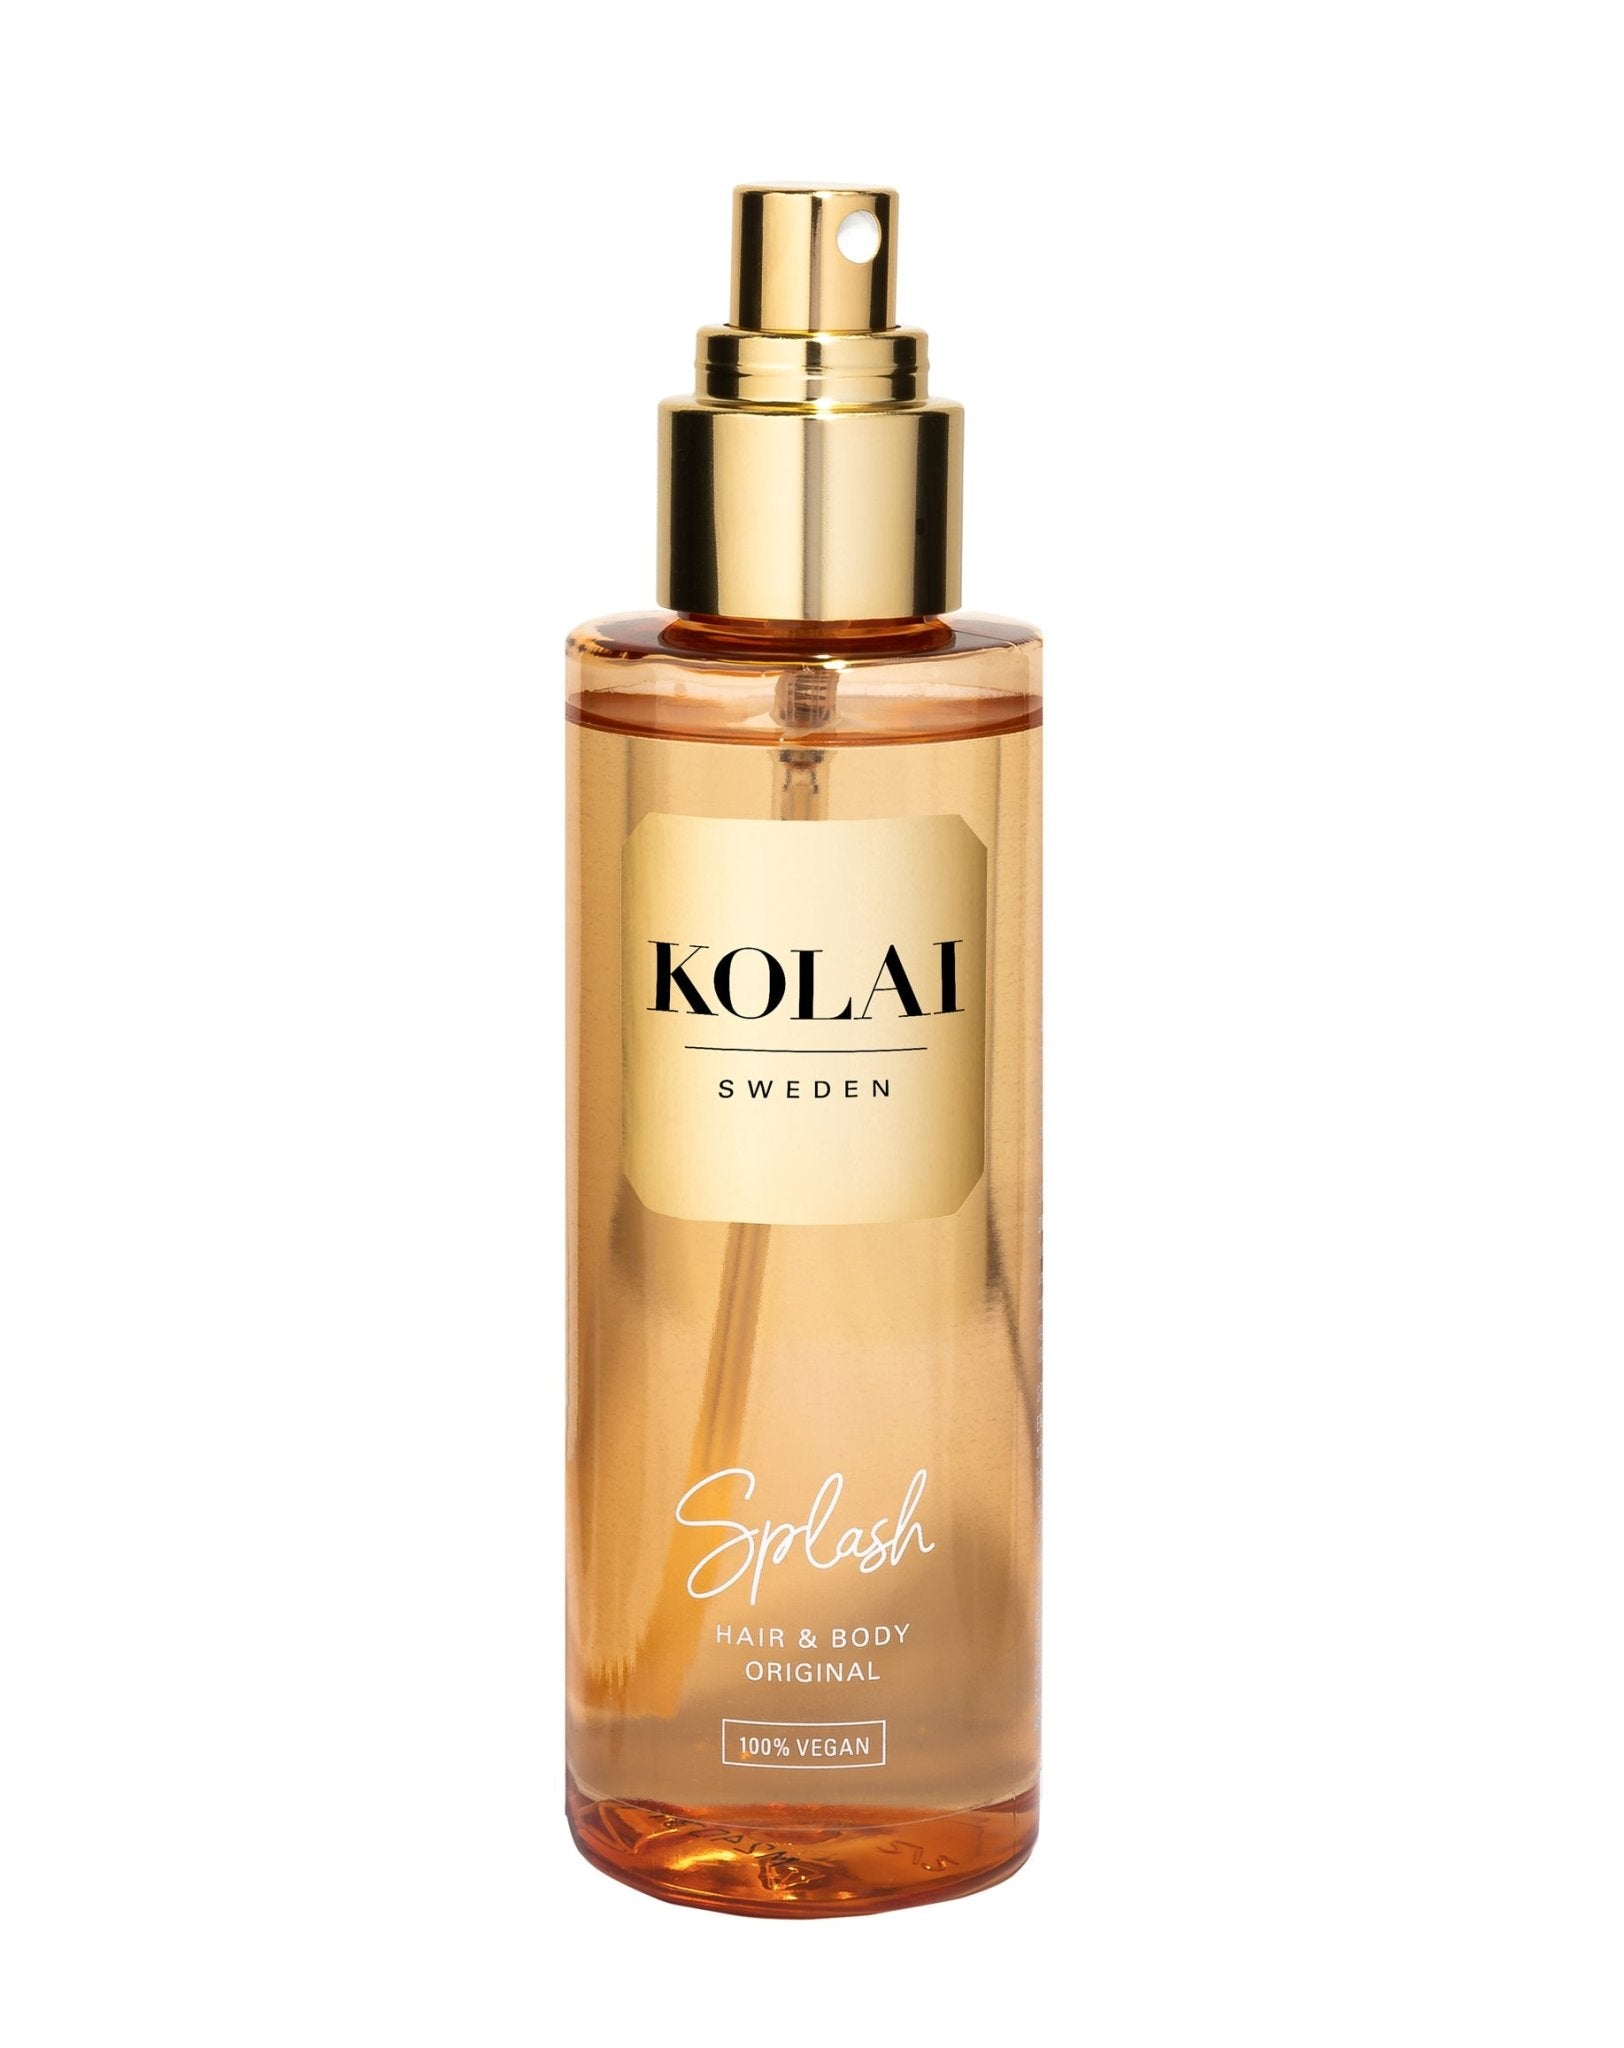 KOLAI Splash Hair & Body Mist, 150ml, i en ljusorange transparent flaska med guldlogga på vitgrå bakgrund, en 100% VEGAN uppfriskande mist med KOLAI originalparfym.